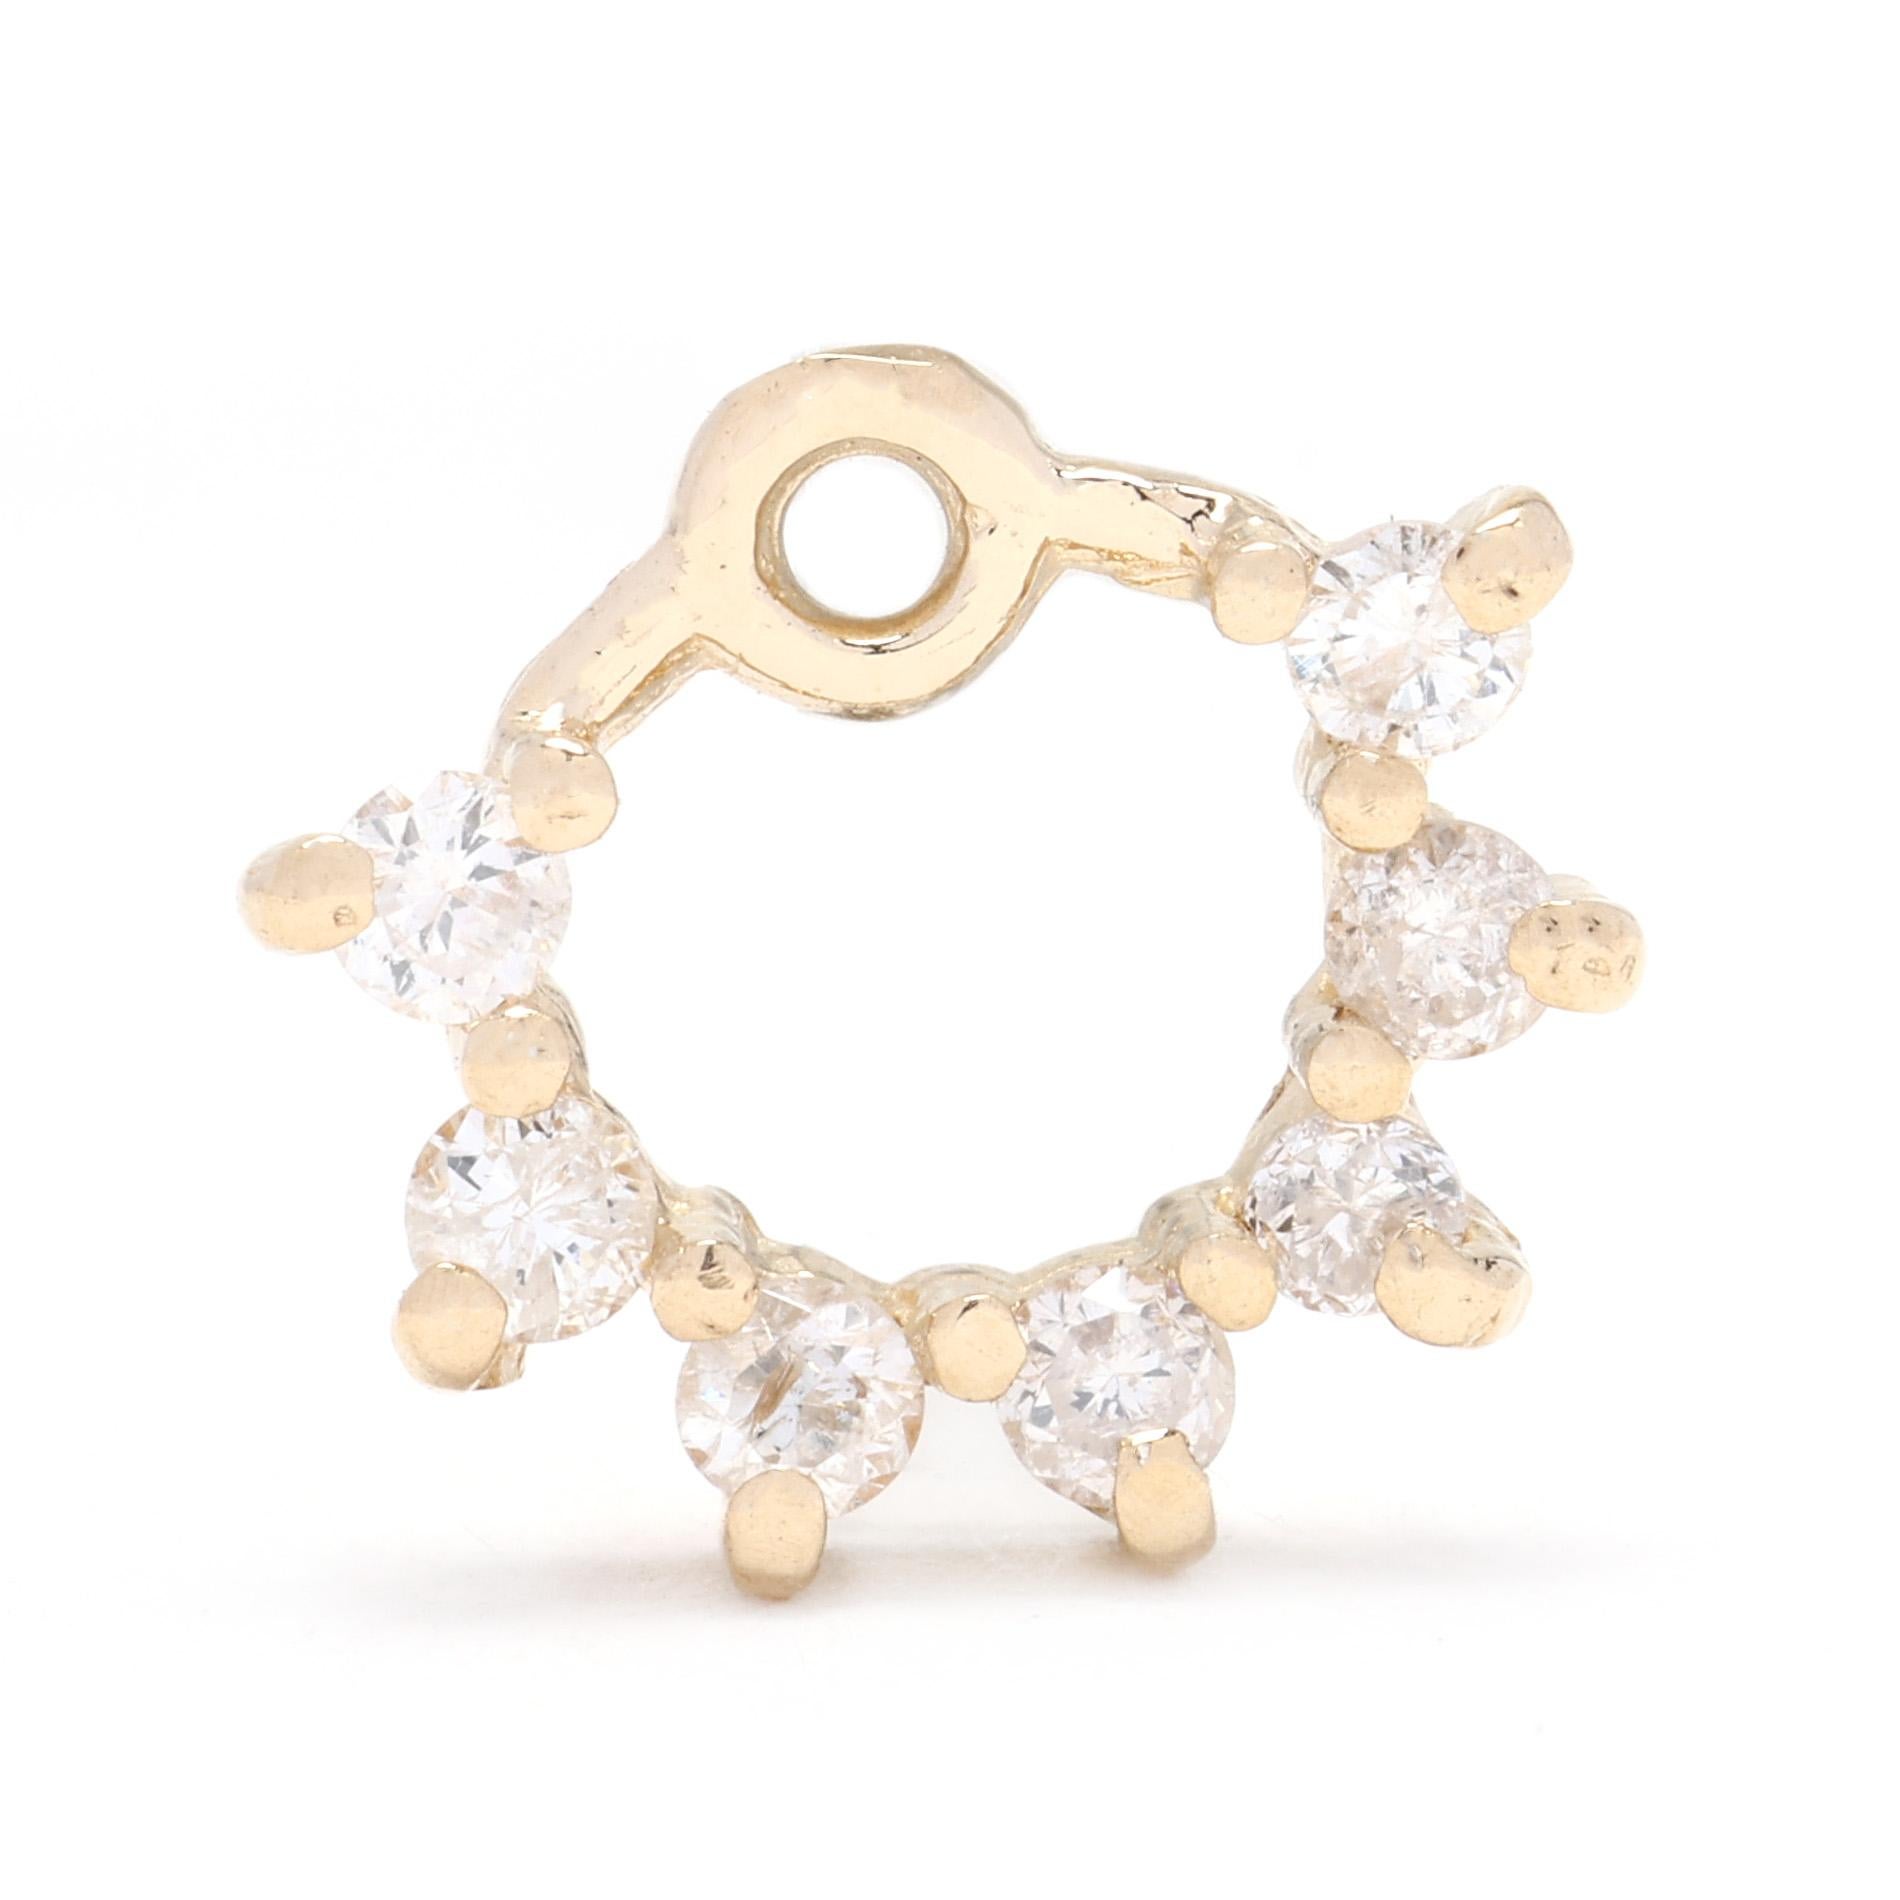 Ces vestes de boucles d'oreilles en diamant de 0,25ctw constituent un ajout éblouissant et polyvalent à votre collection de bijoux. Réalisées en or jaune 14k, ces vestes de boucles d'oreilles présentent un motif de style fleur avec des diamants